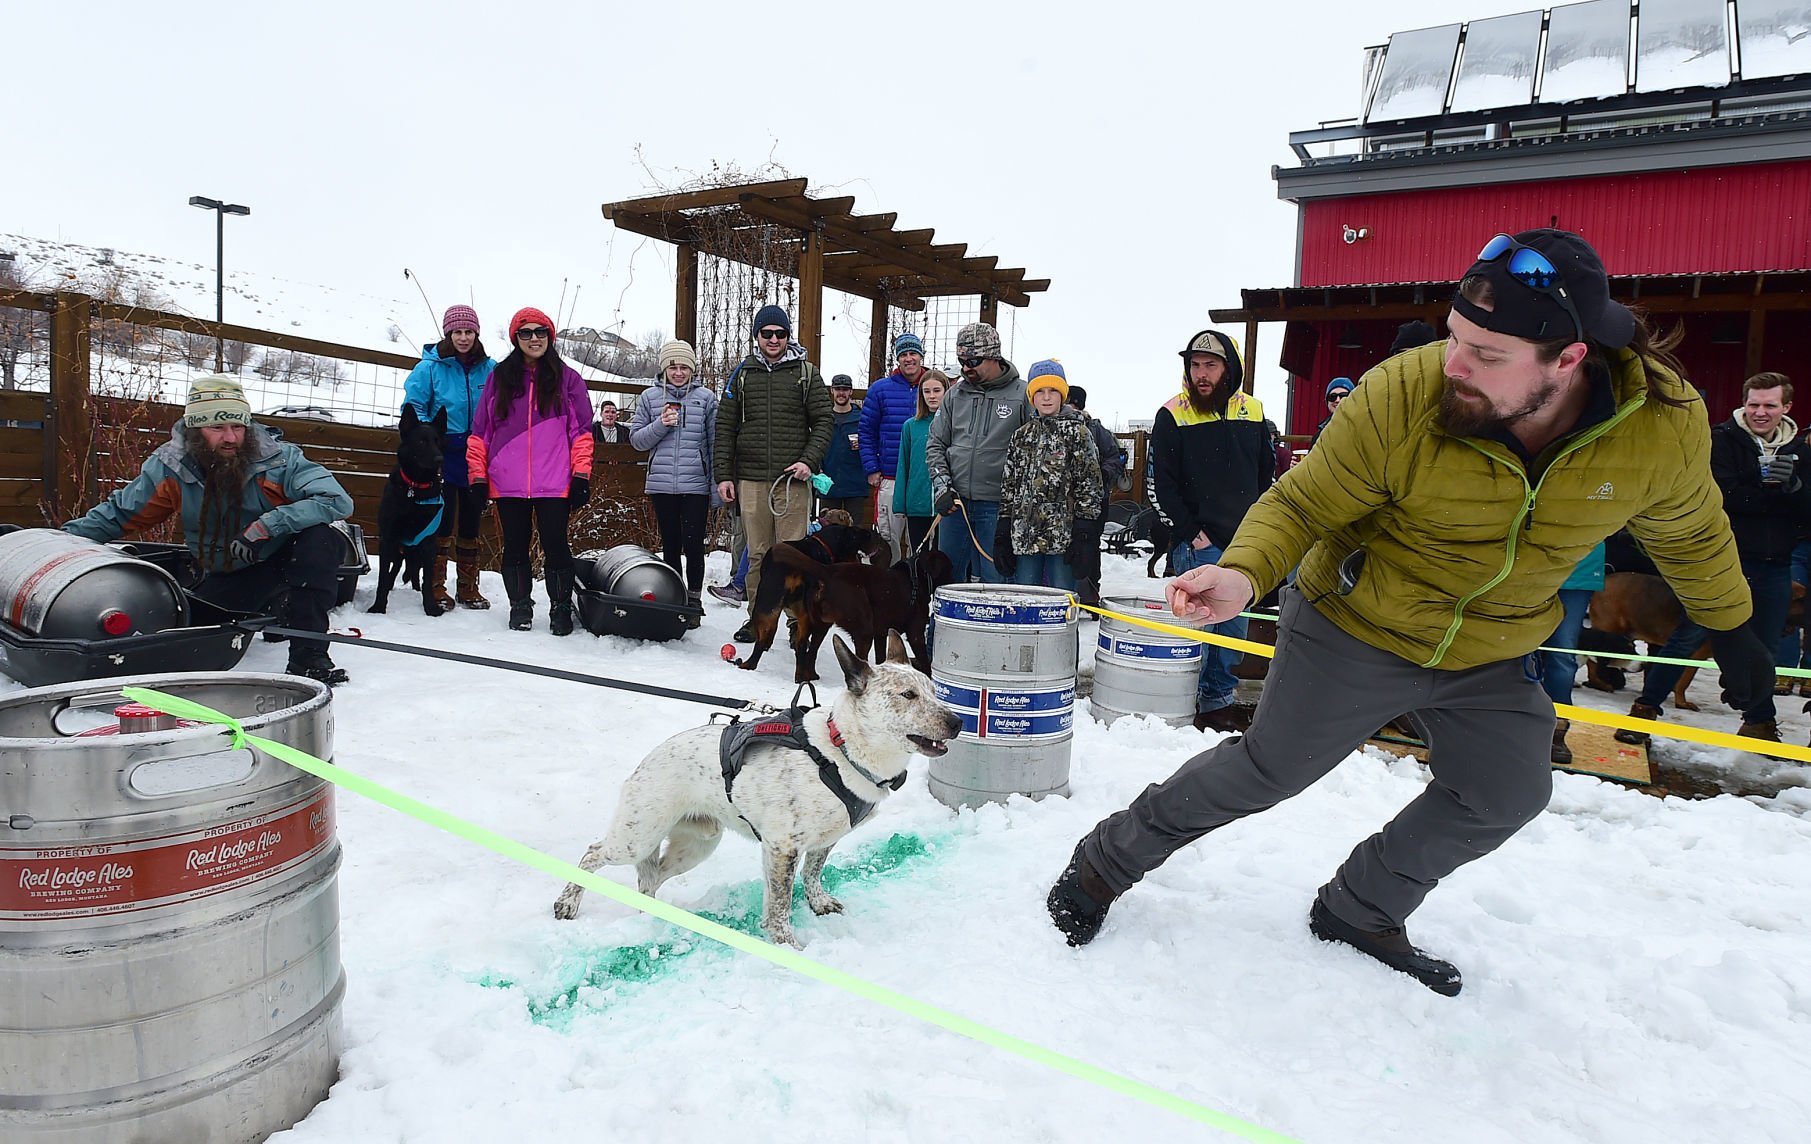 bernese mountain dog pulling sled